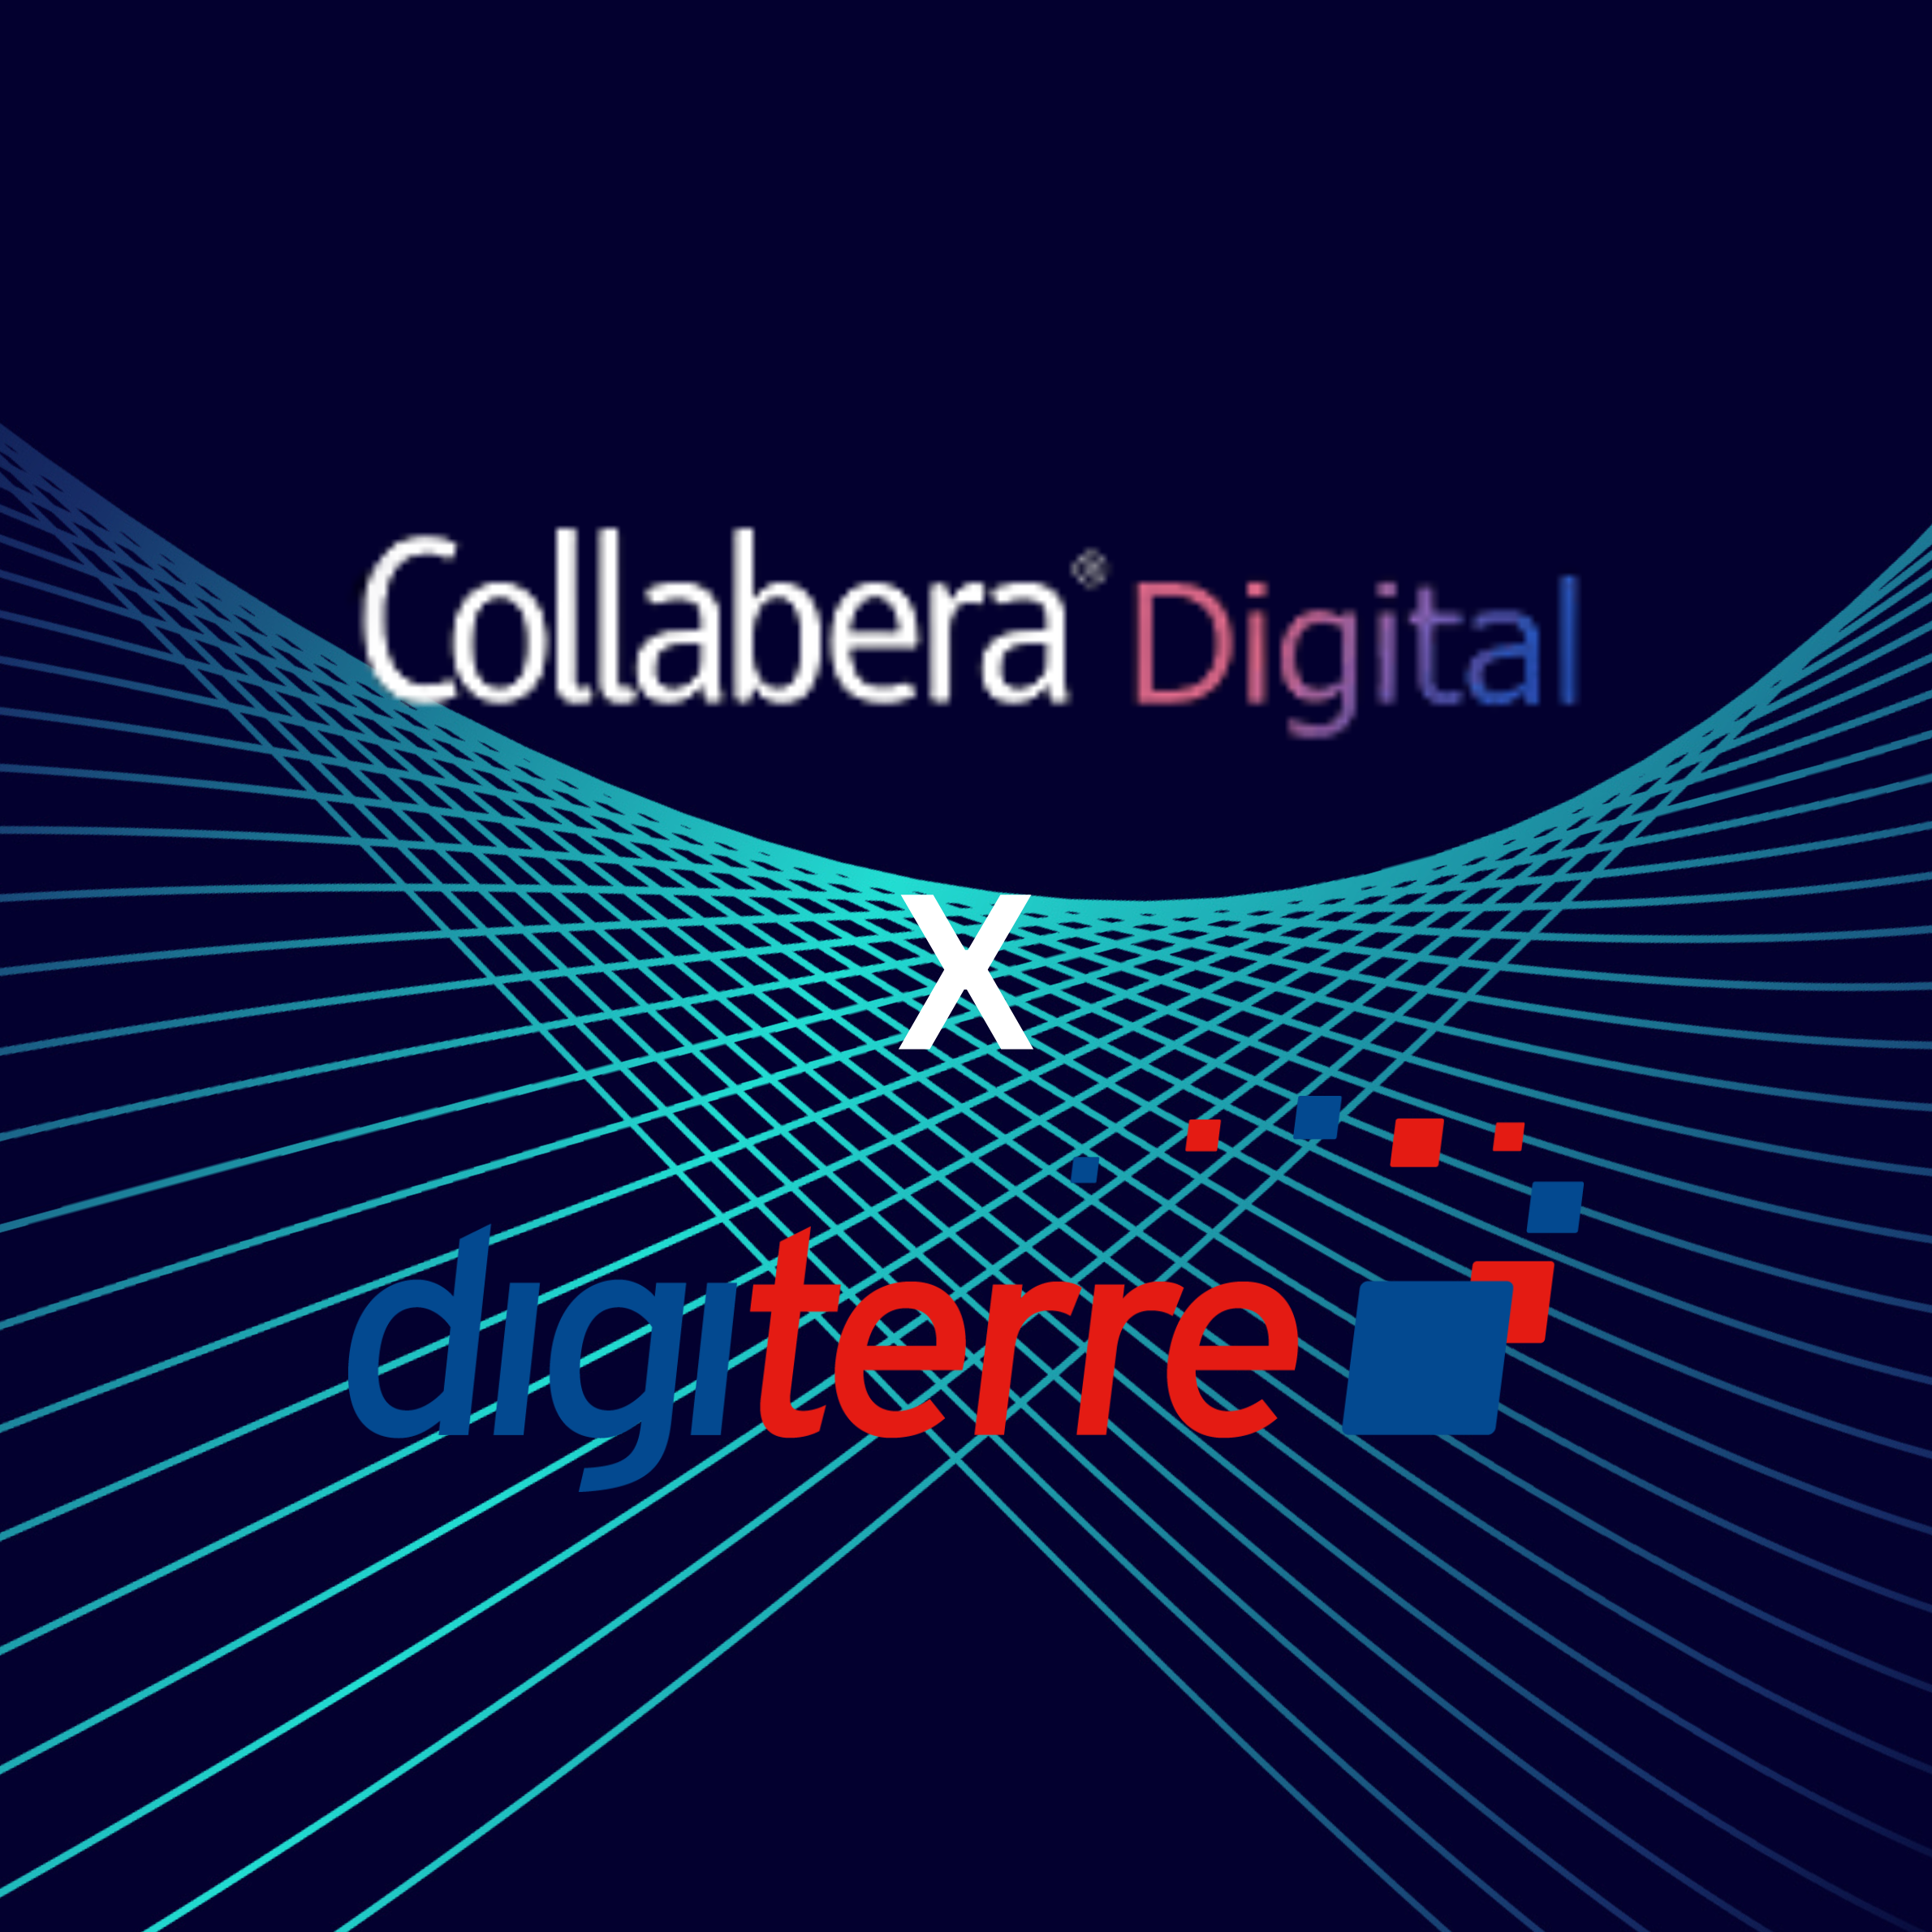 Collabera Digital Acquires Digiterre